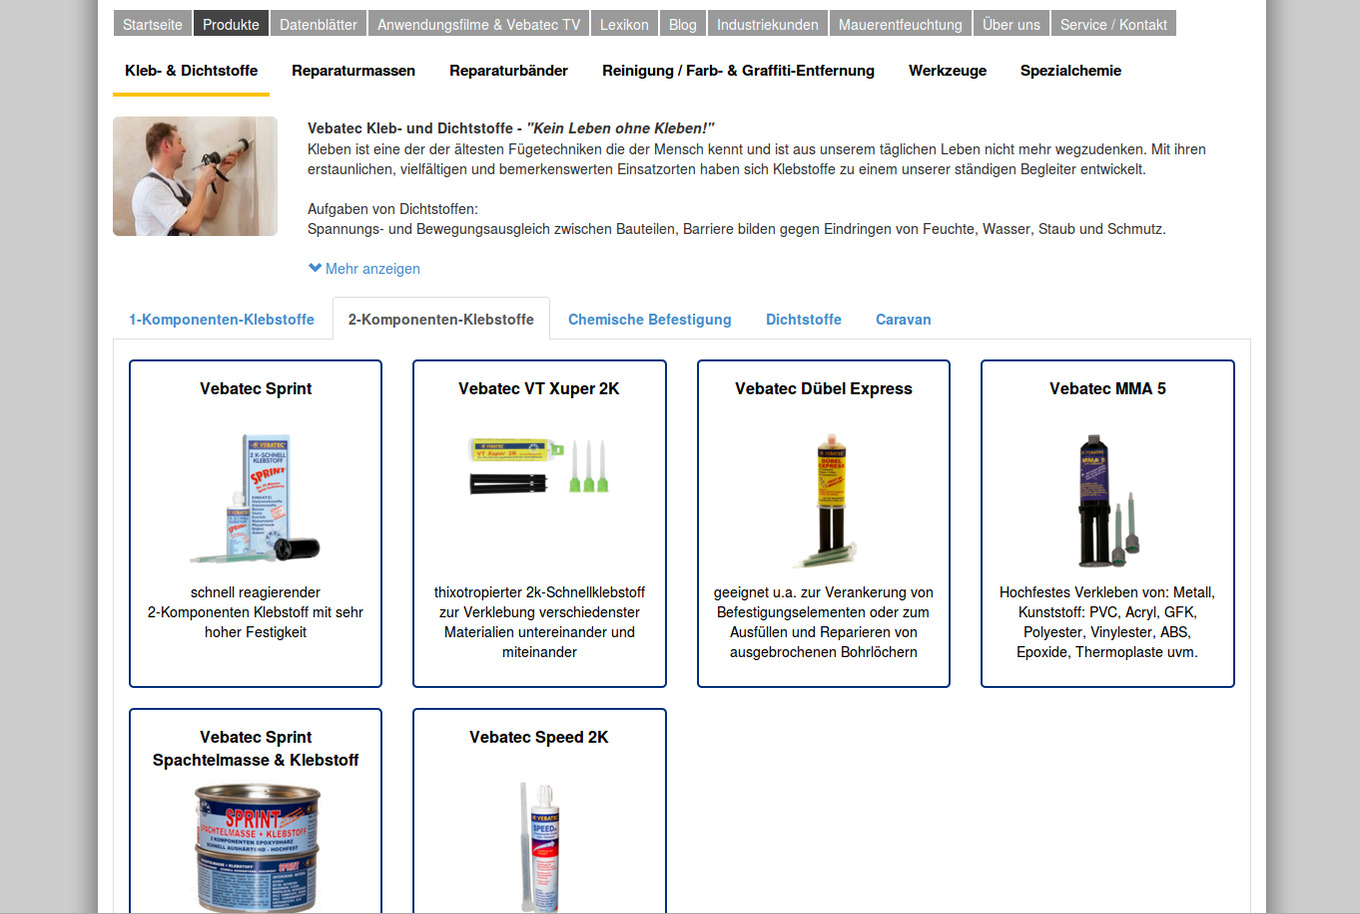 Webseite der Vebatec GmbH: Produktkatalog